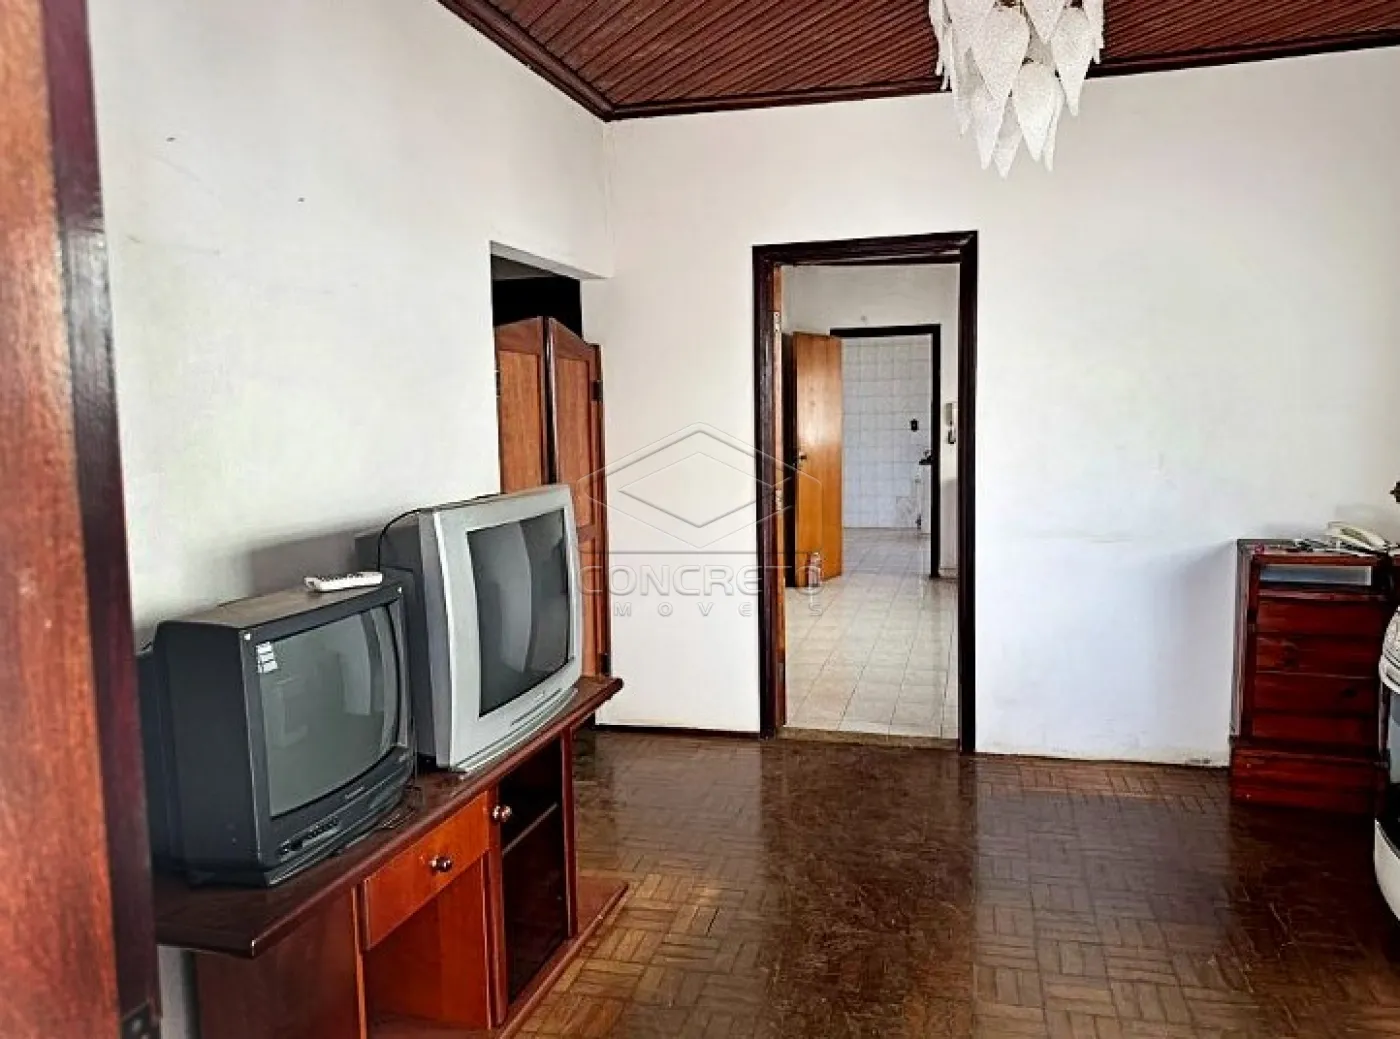 Comprar Casa / Padrão em Lençóis Paulista R$ 260.000,00 - Foto 1